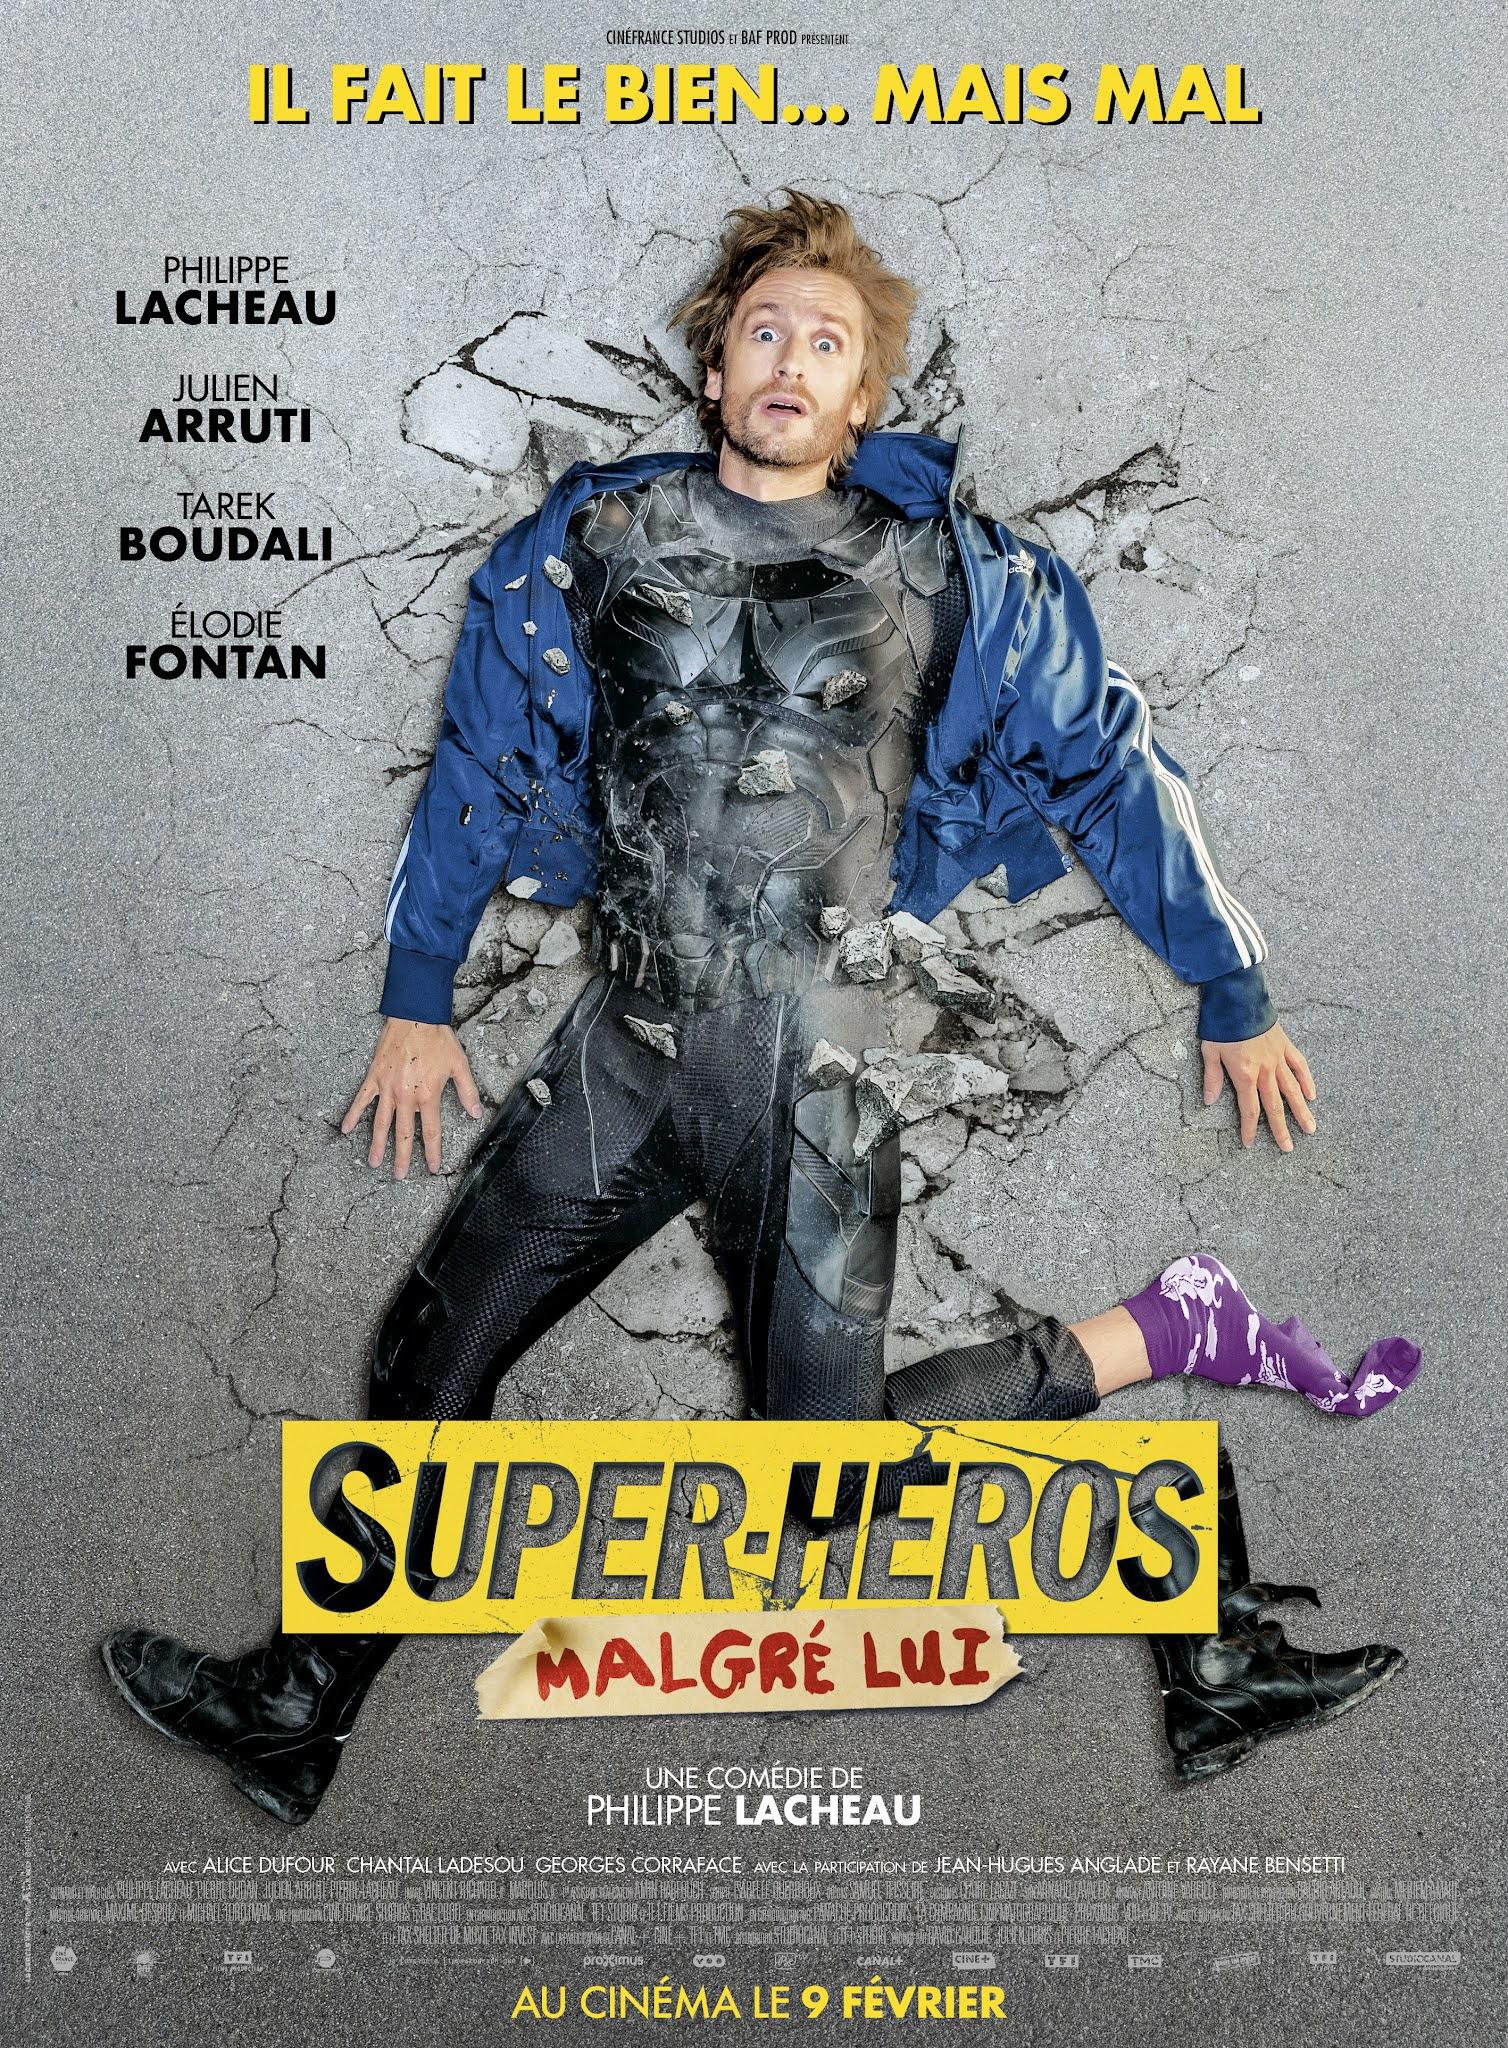 Постер фильма Суперчел | Super-héros malgré lui